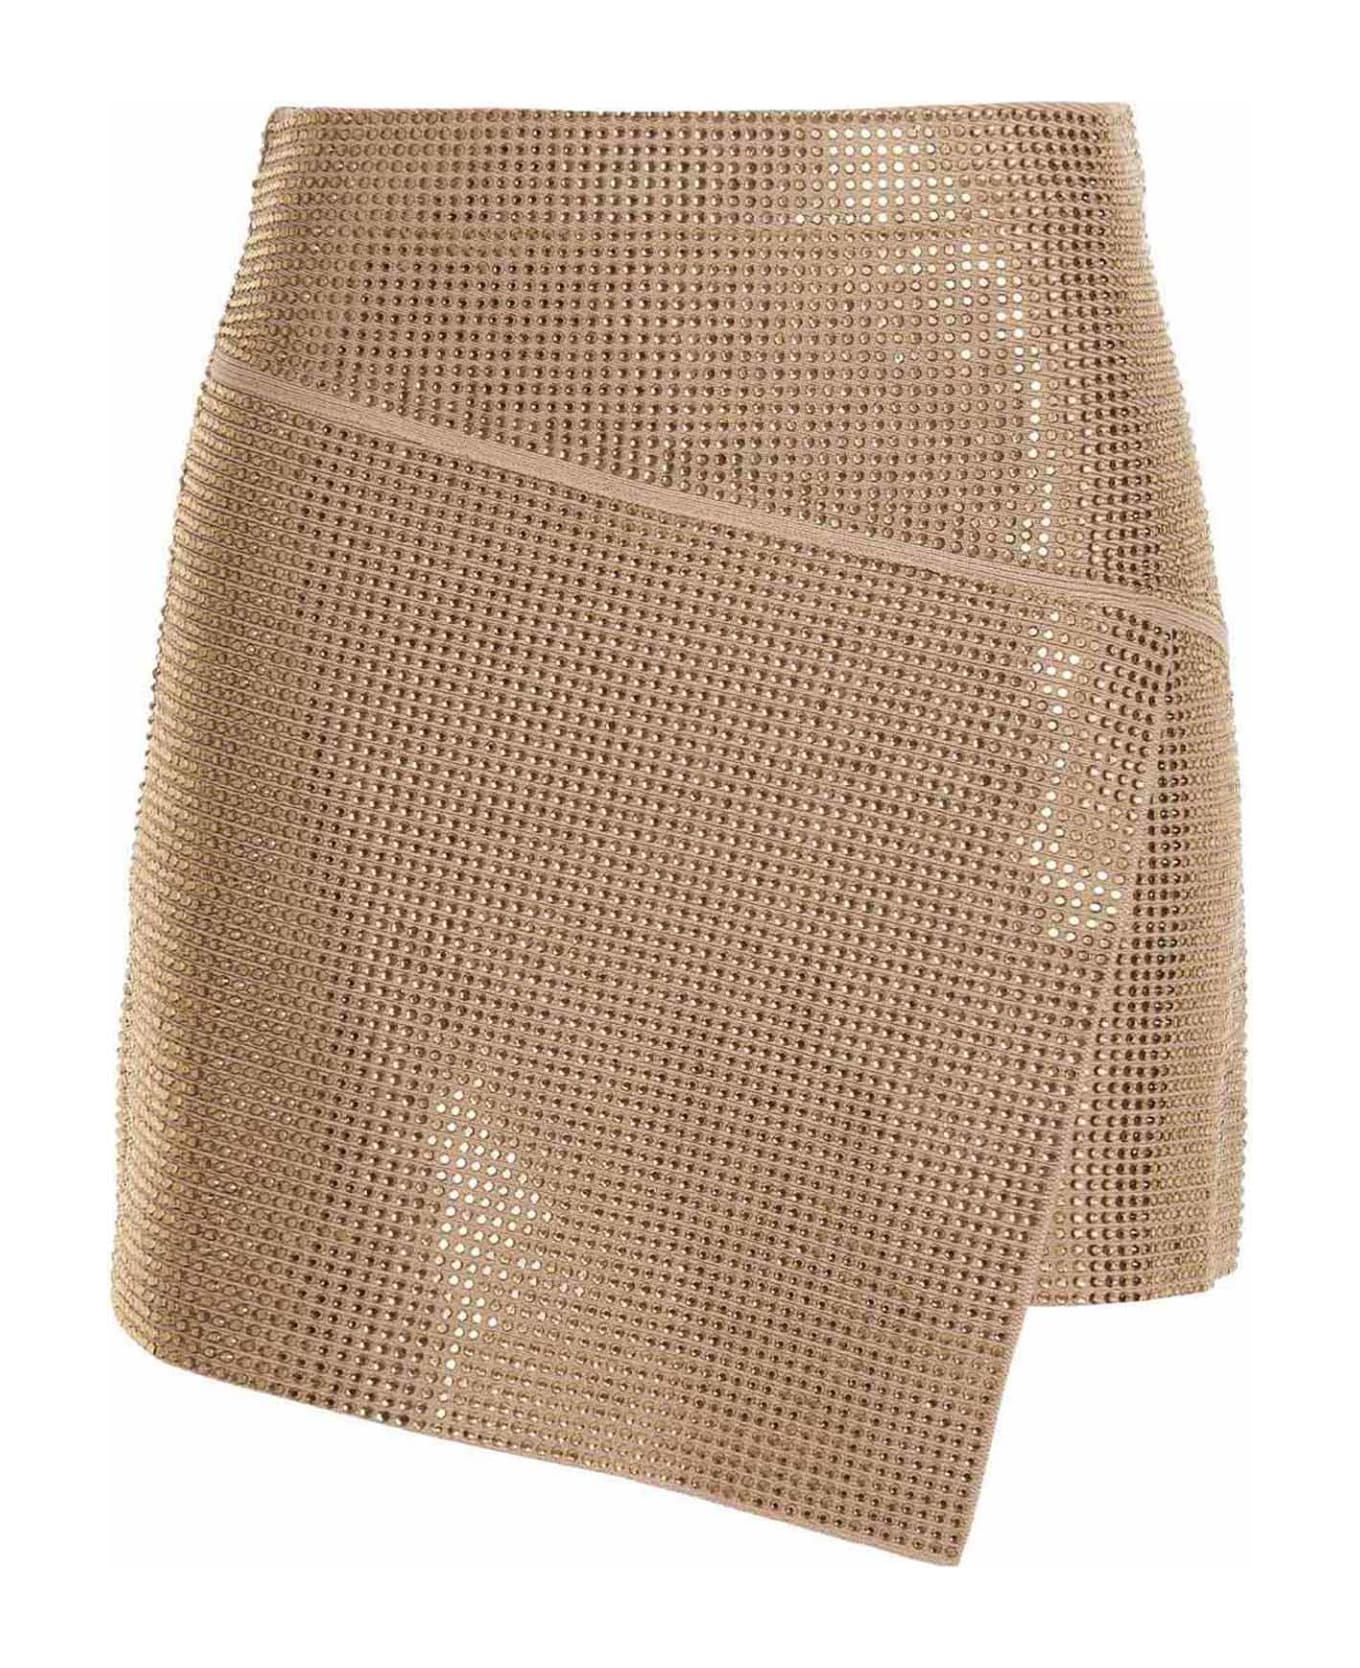 ANDREĀDAMO Sequin Knit Skirt - Beige